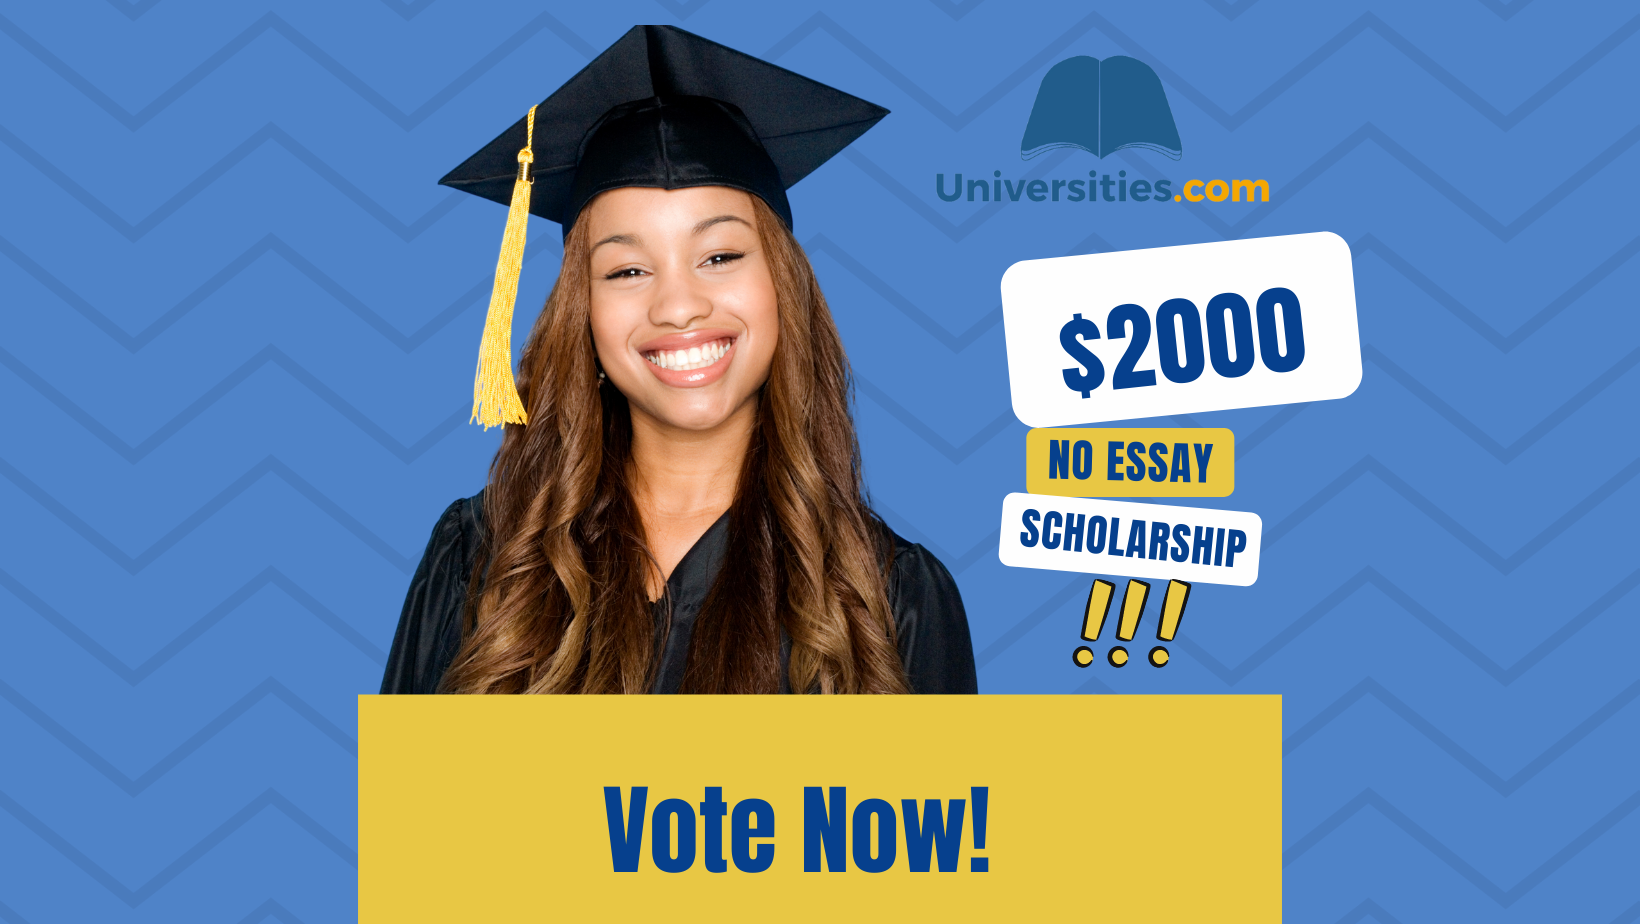 Universities.com $2000 Scholarship - Vote Now!